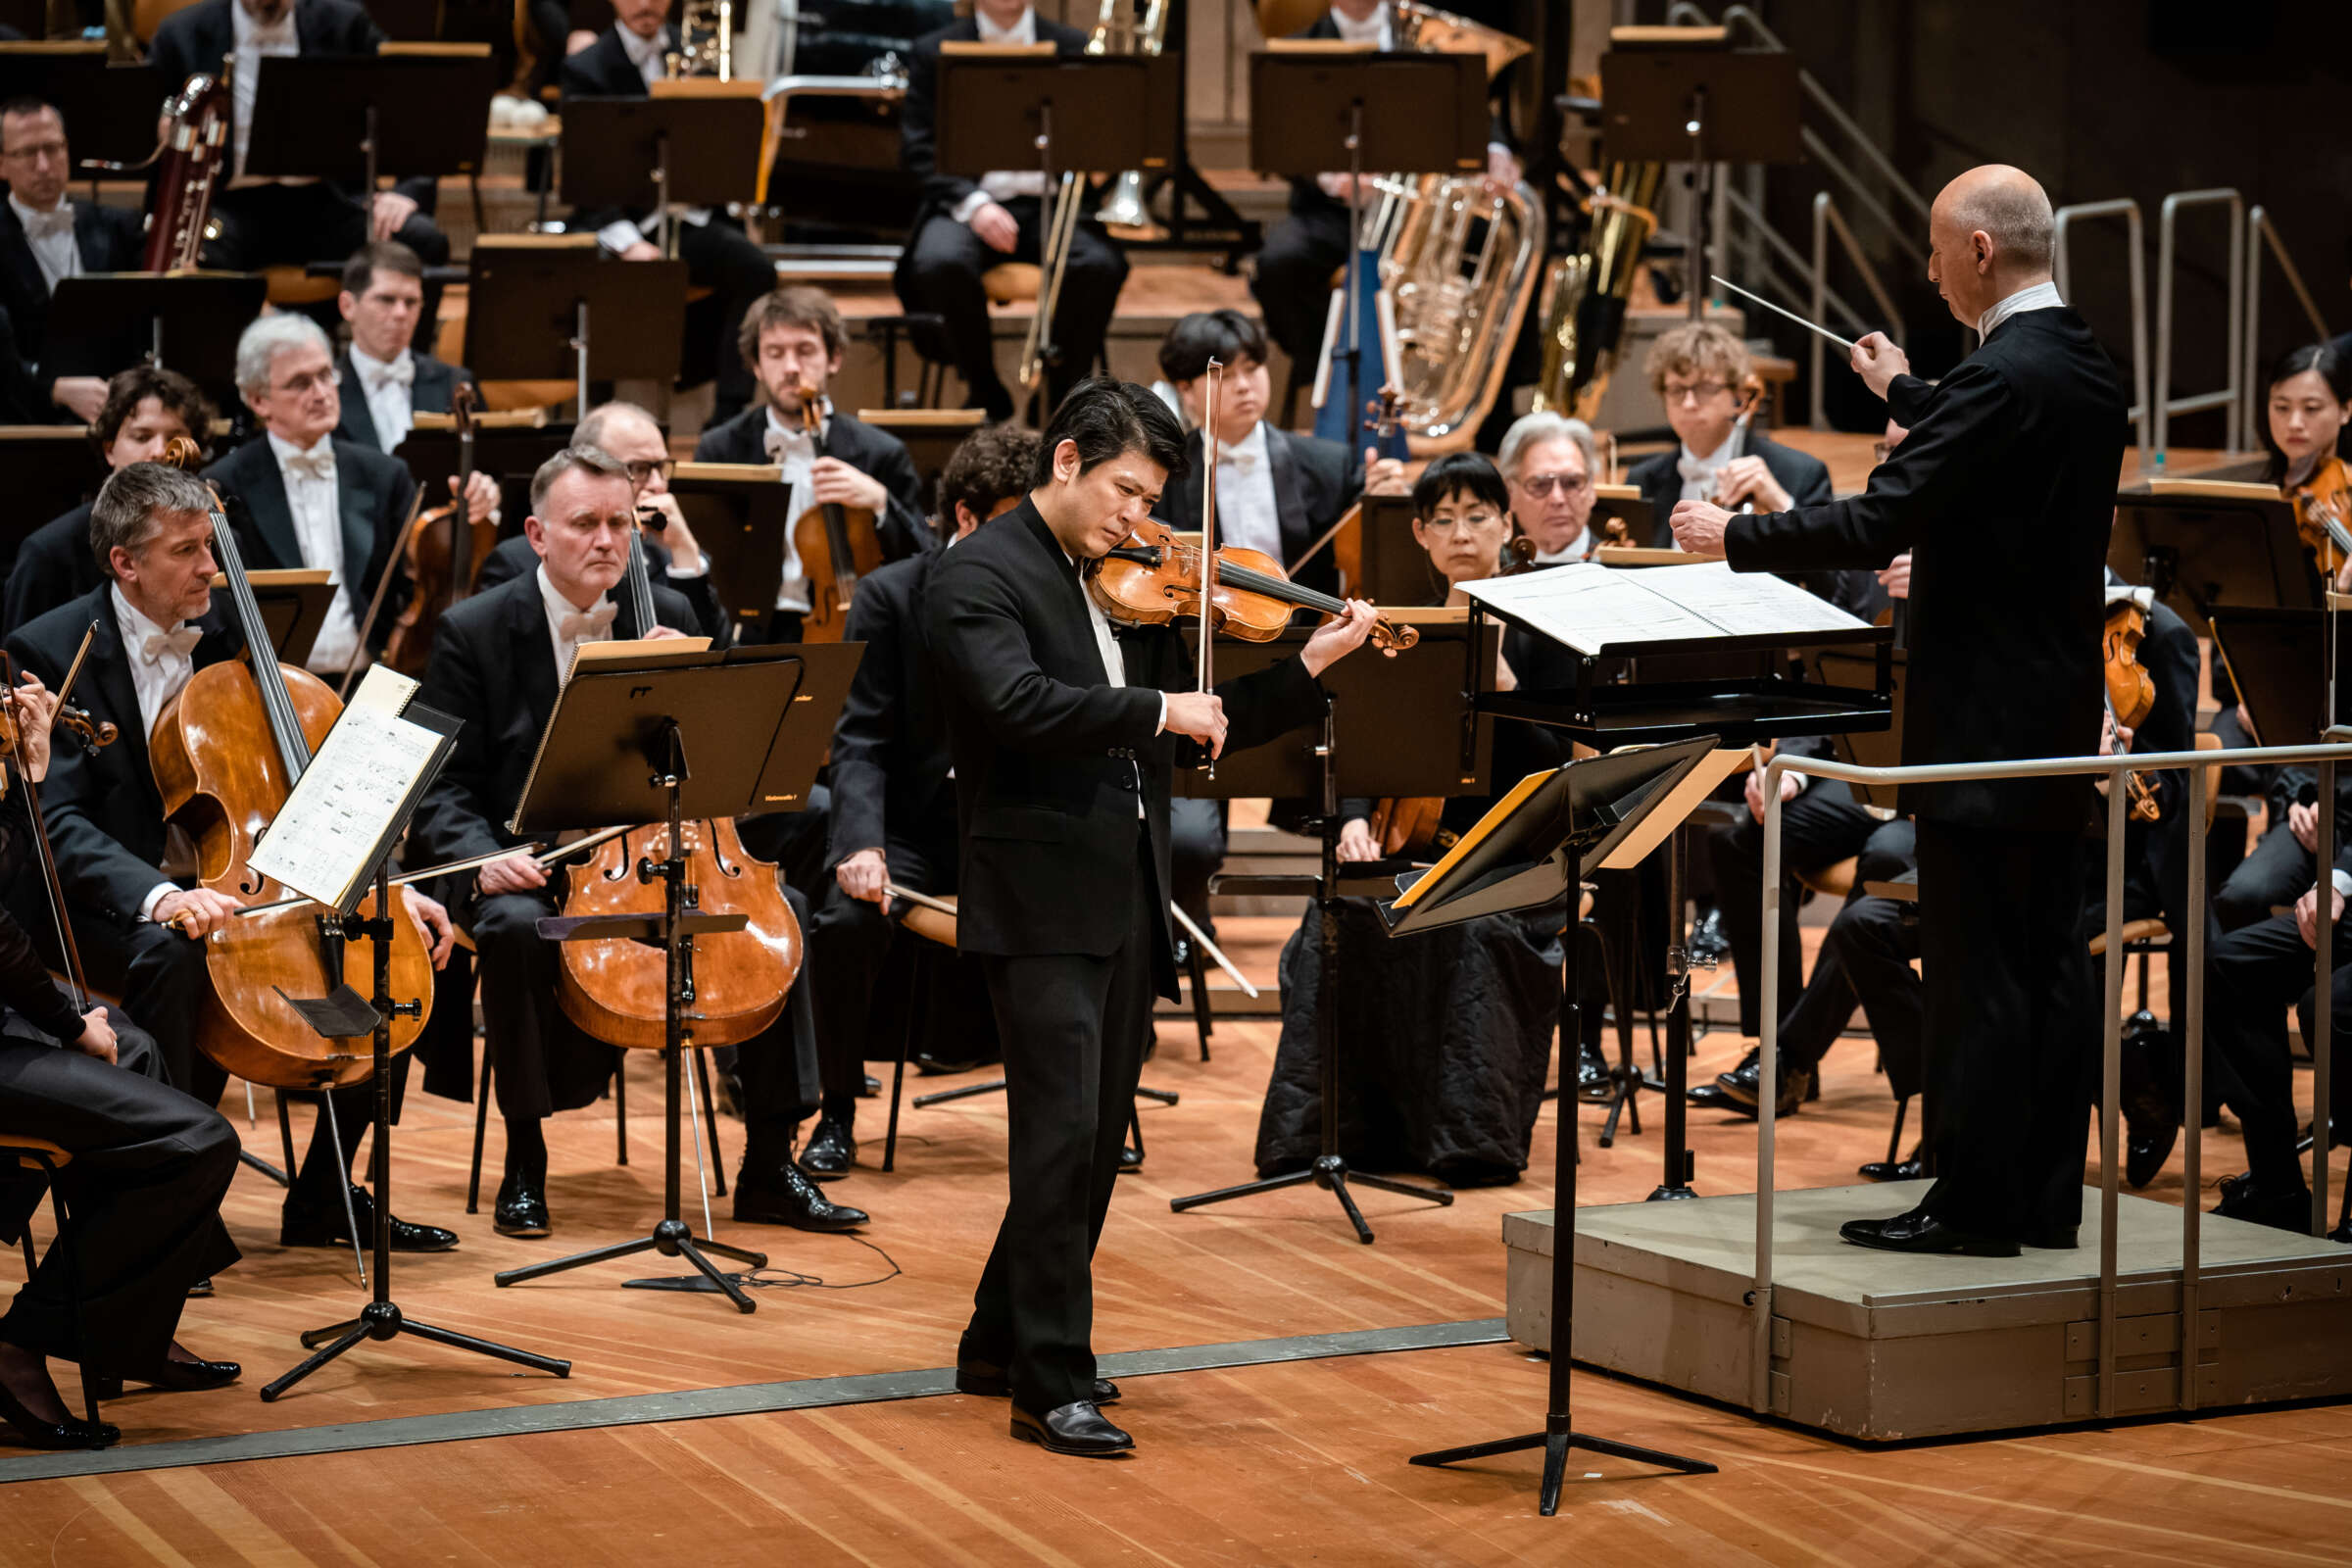 Sehen Sie sich die Aufführung von Toshio Hosokawas „Prayer for Violin and Orchestra“ durch die Berliner Philharmoniker an